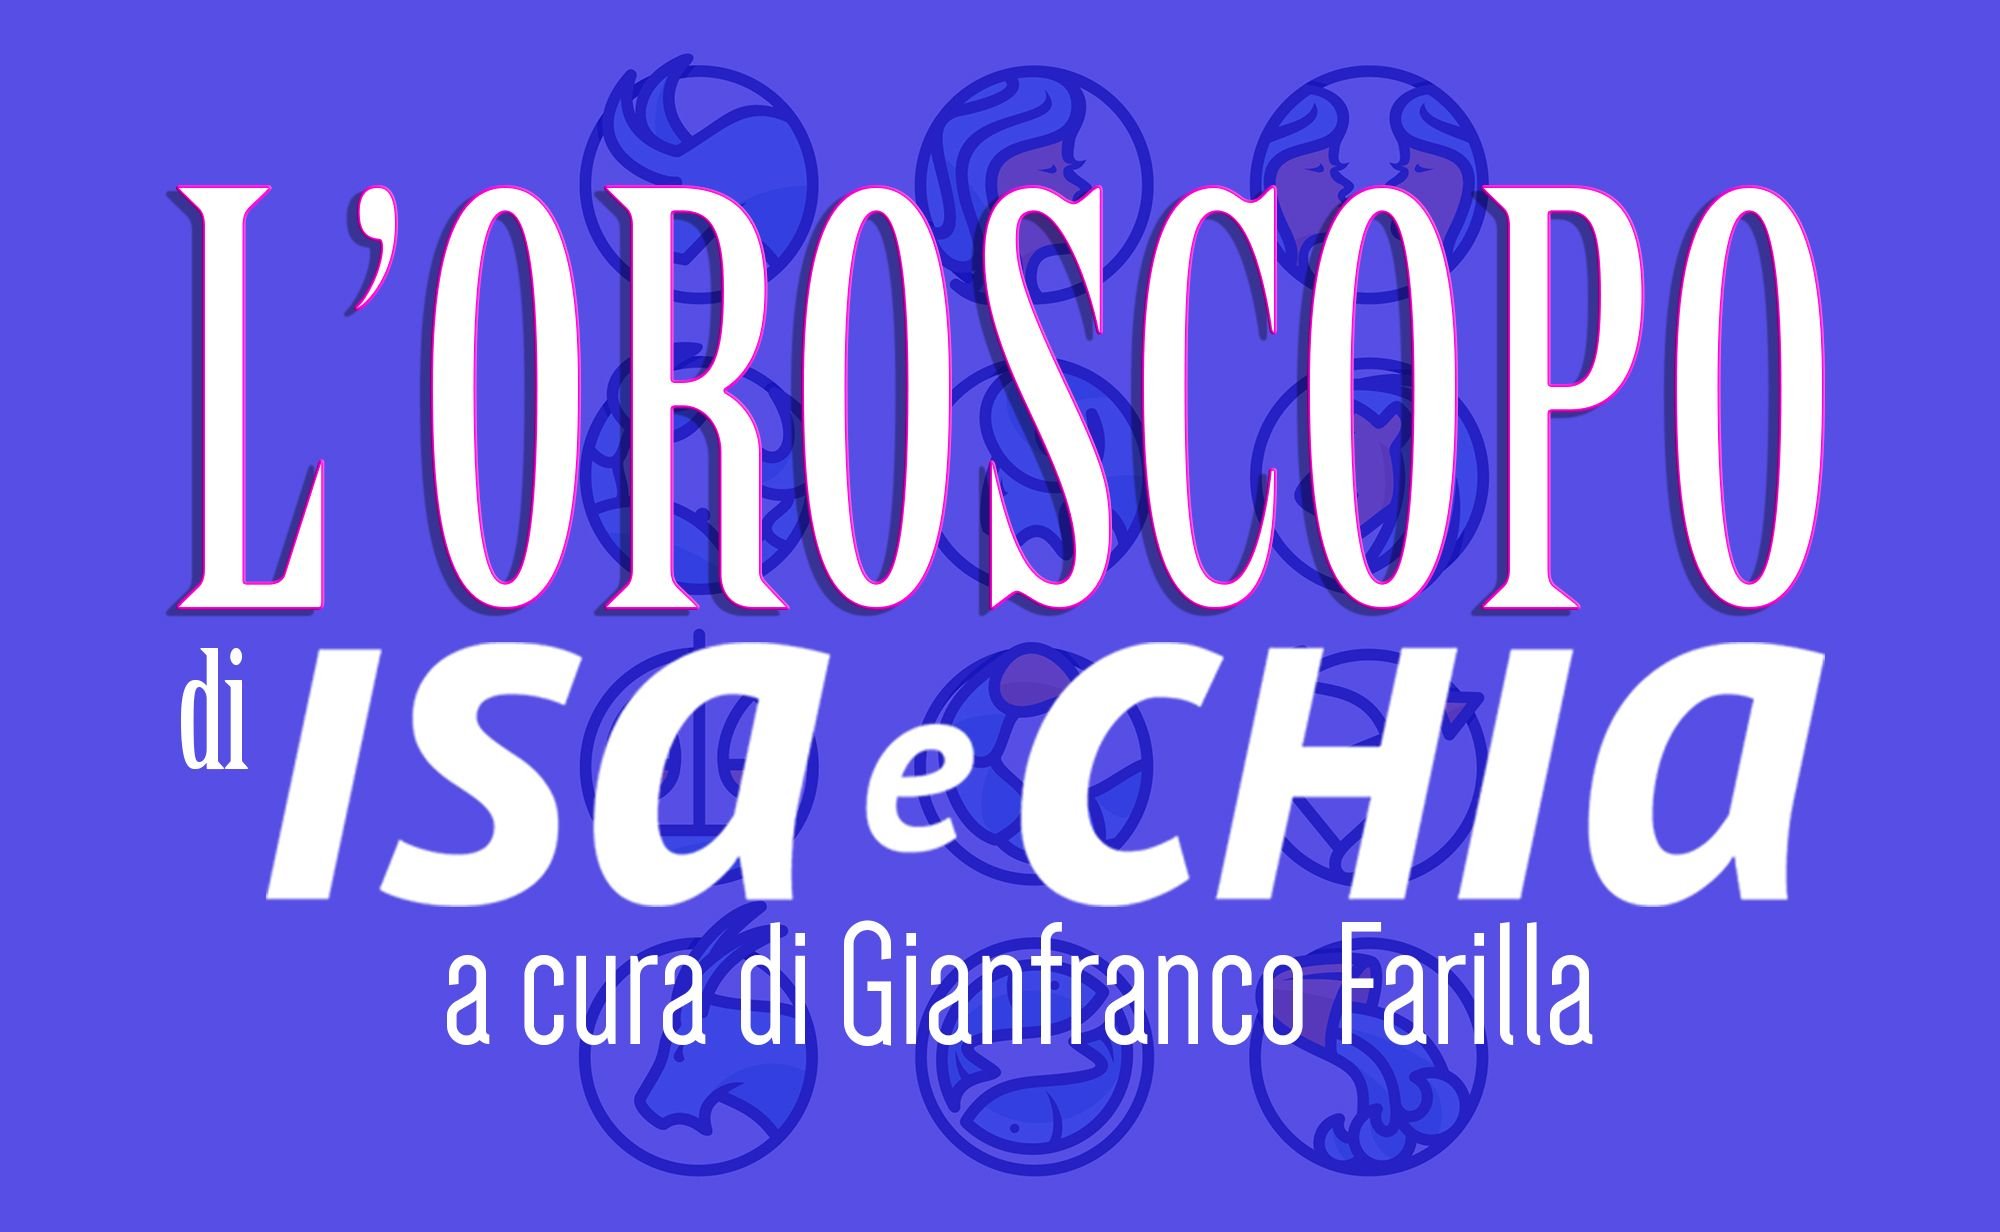 ‘L’oroscopo di Isa e Chia’ dall’8 al 14 ottobre (a cura di Gianfranco Farilla)